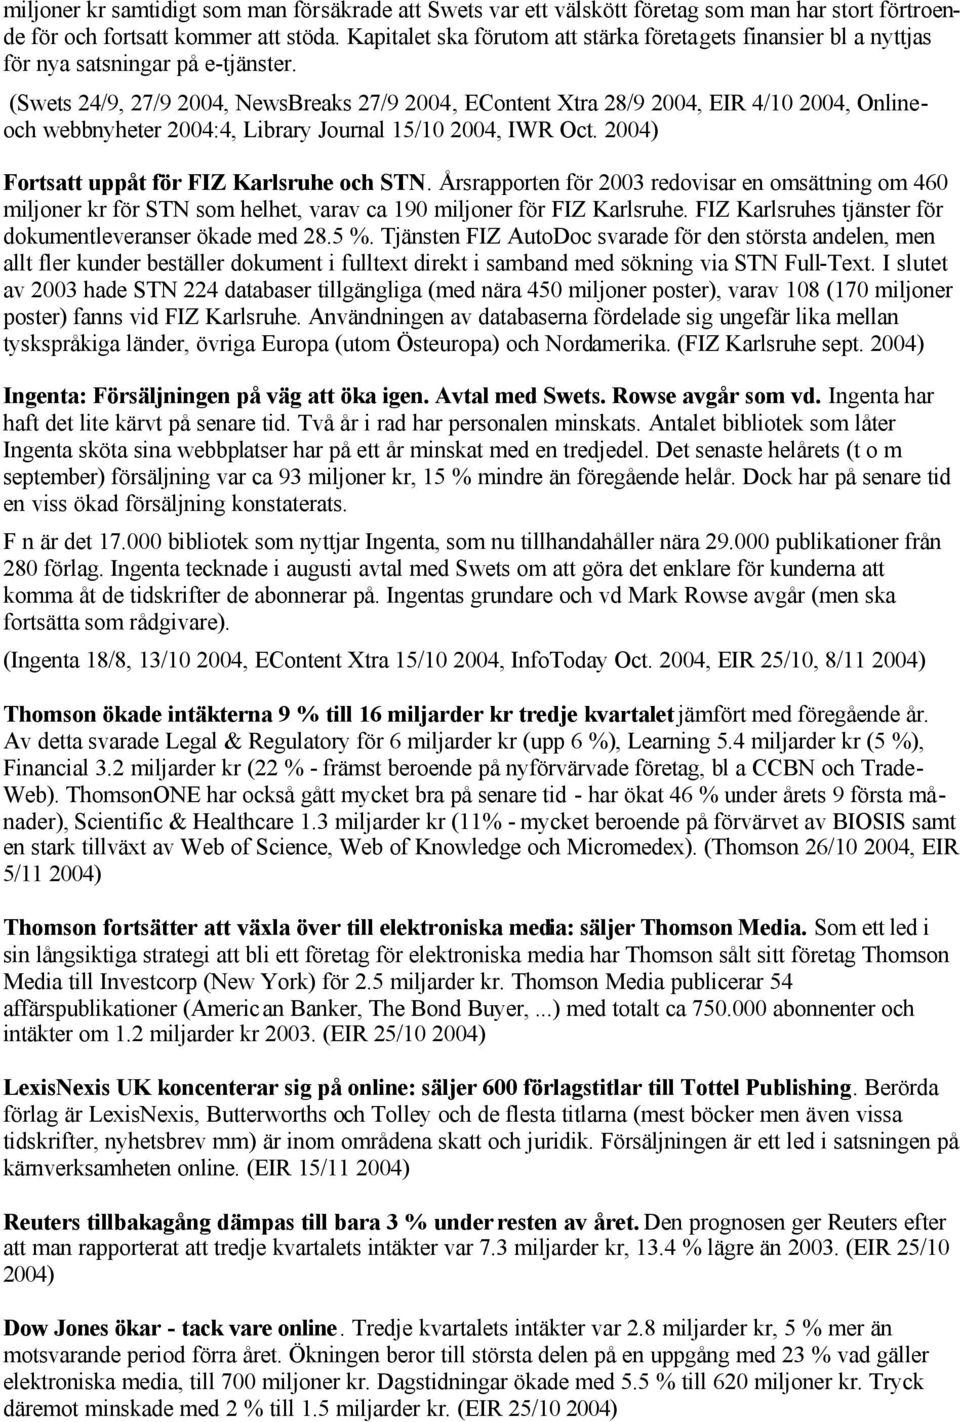 (Swets 24/9, 27/9 2004, NewsBreaks 27/9 2004, EContent Xtra 28/9 2004, EIR 4/10 2004, Onlineoch webbnyheter 2004:4, Library Journal 15/10 2004, IWR Oct. 2004) Fortsatt uppåt för FIZ Karlsruhe och STN.